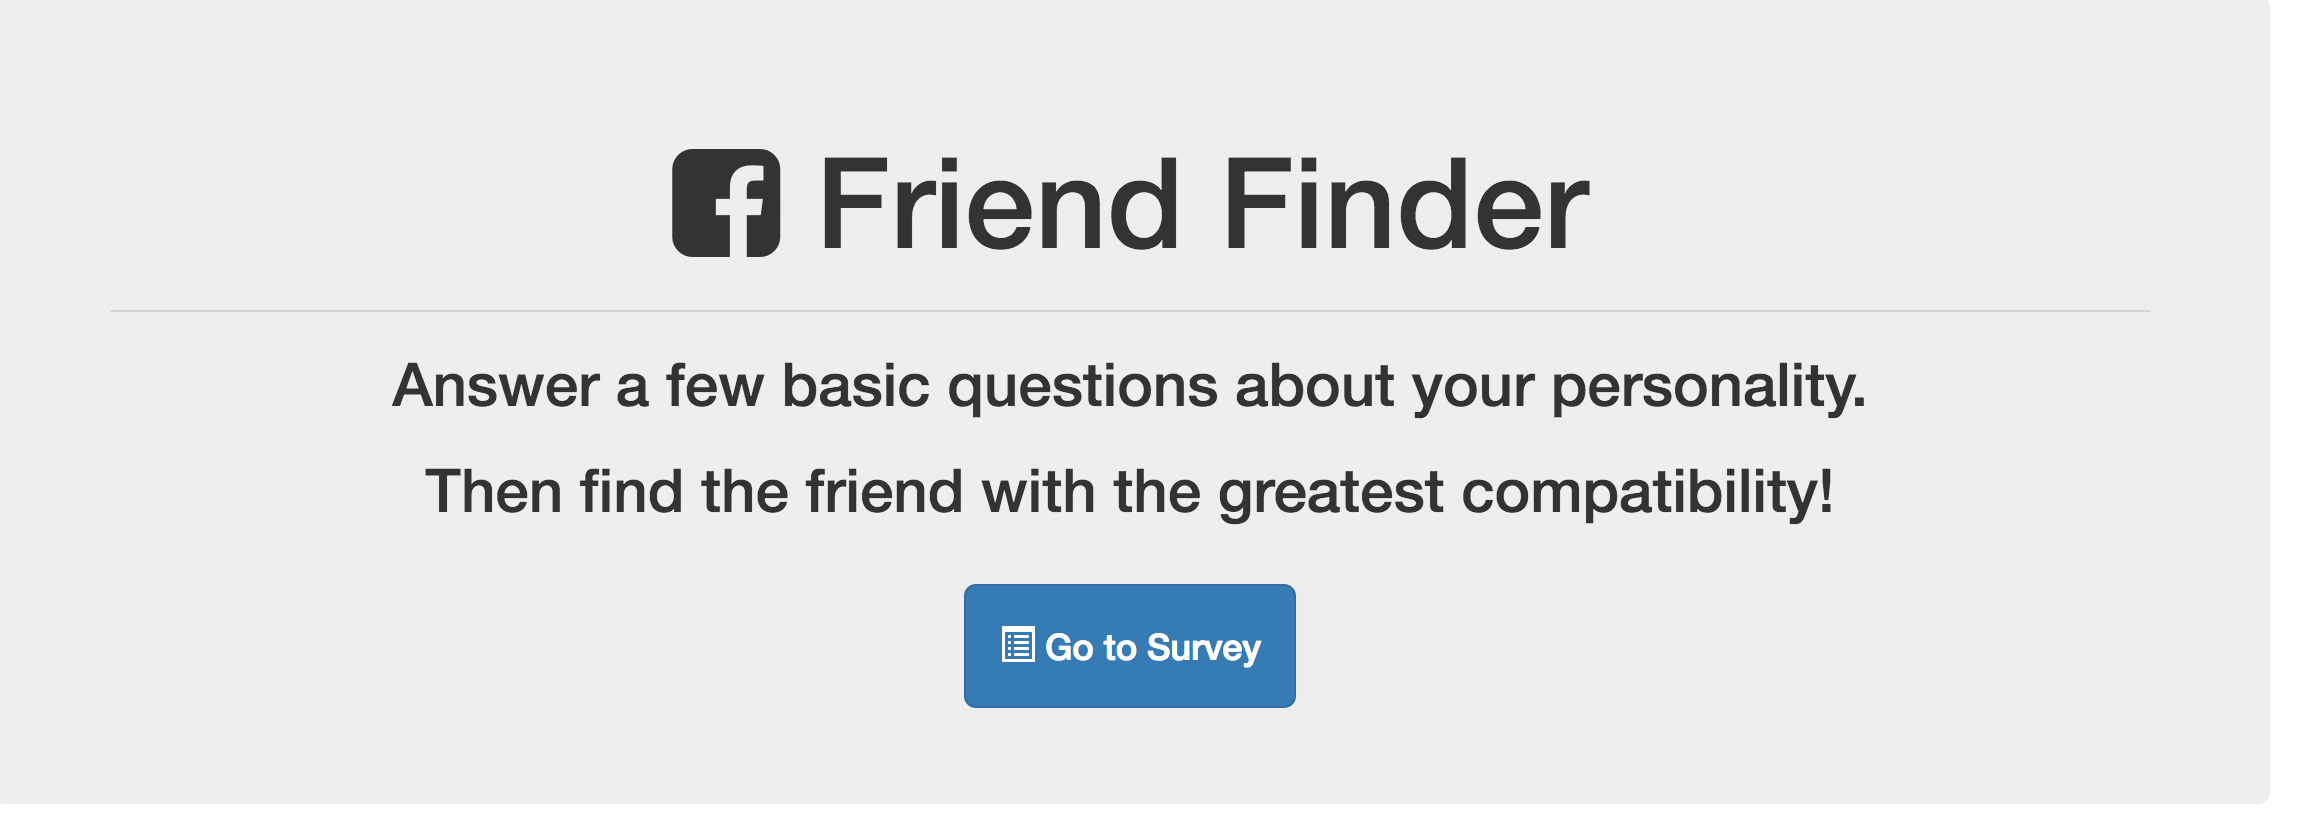 Friend Finder App